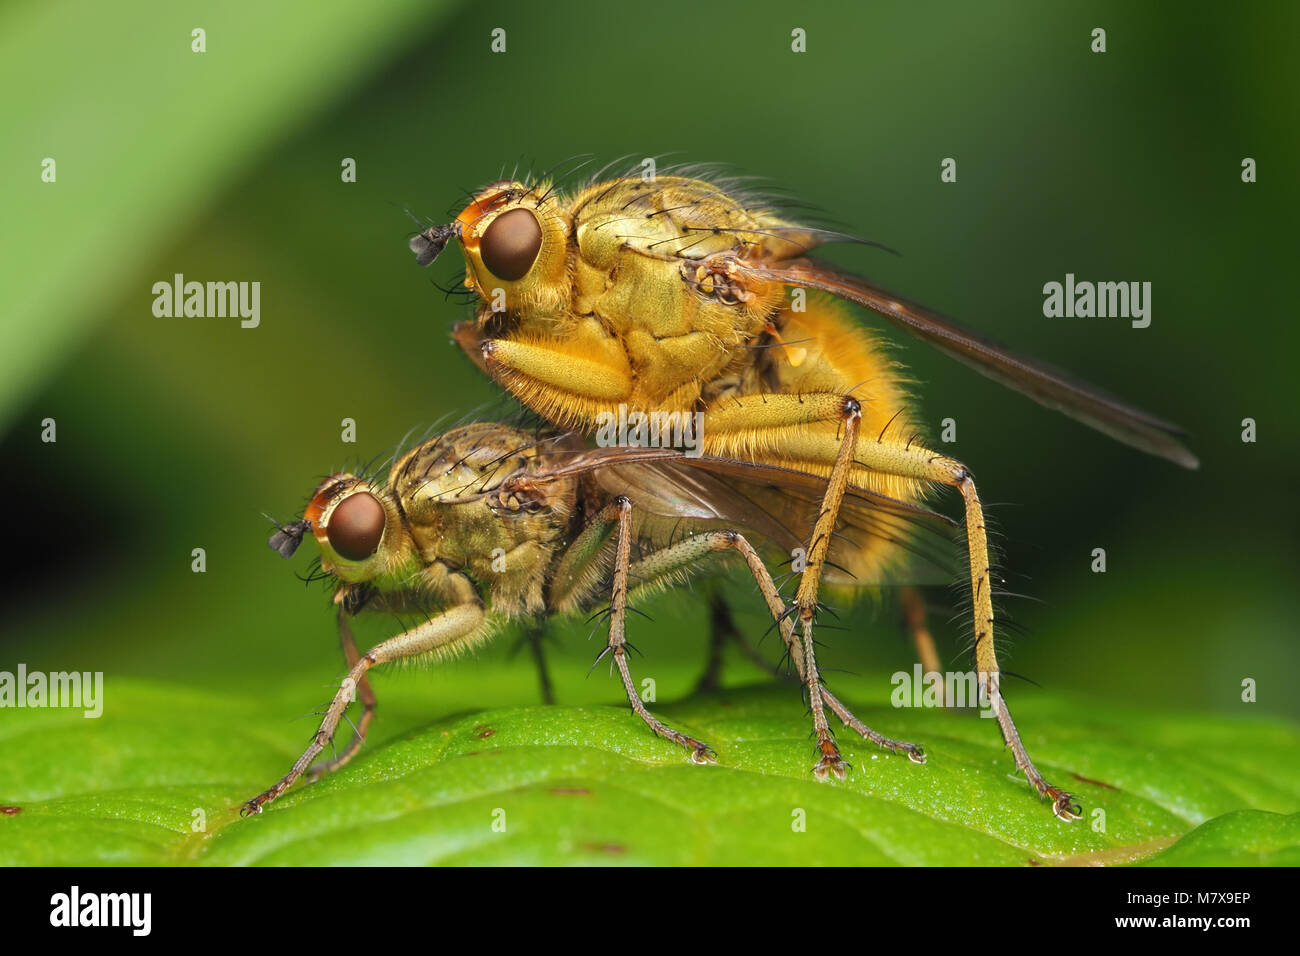 Paire d'accouplement de mouches (Bouse jaune Scathophaga stercoraria) perché sur un quai feuille. Tipperary, Irlande Banque D'Images